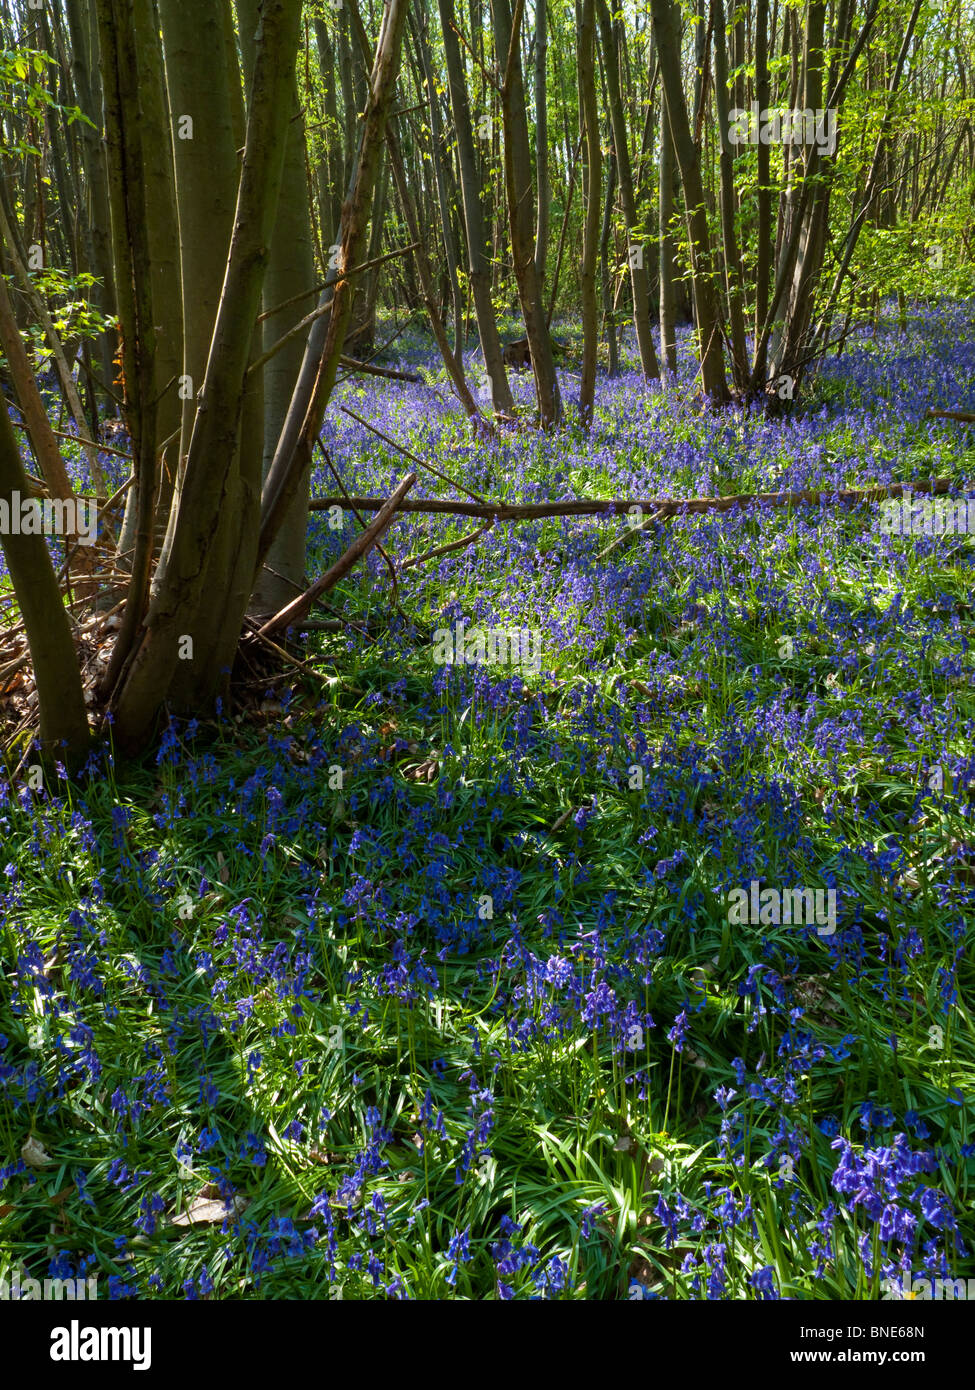 Bluebell común en bosques, Hyacinthoides non-scripta es una planta bulbosa perenne primavera la floración planta Foto de stock